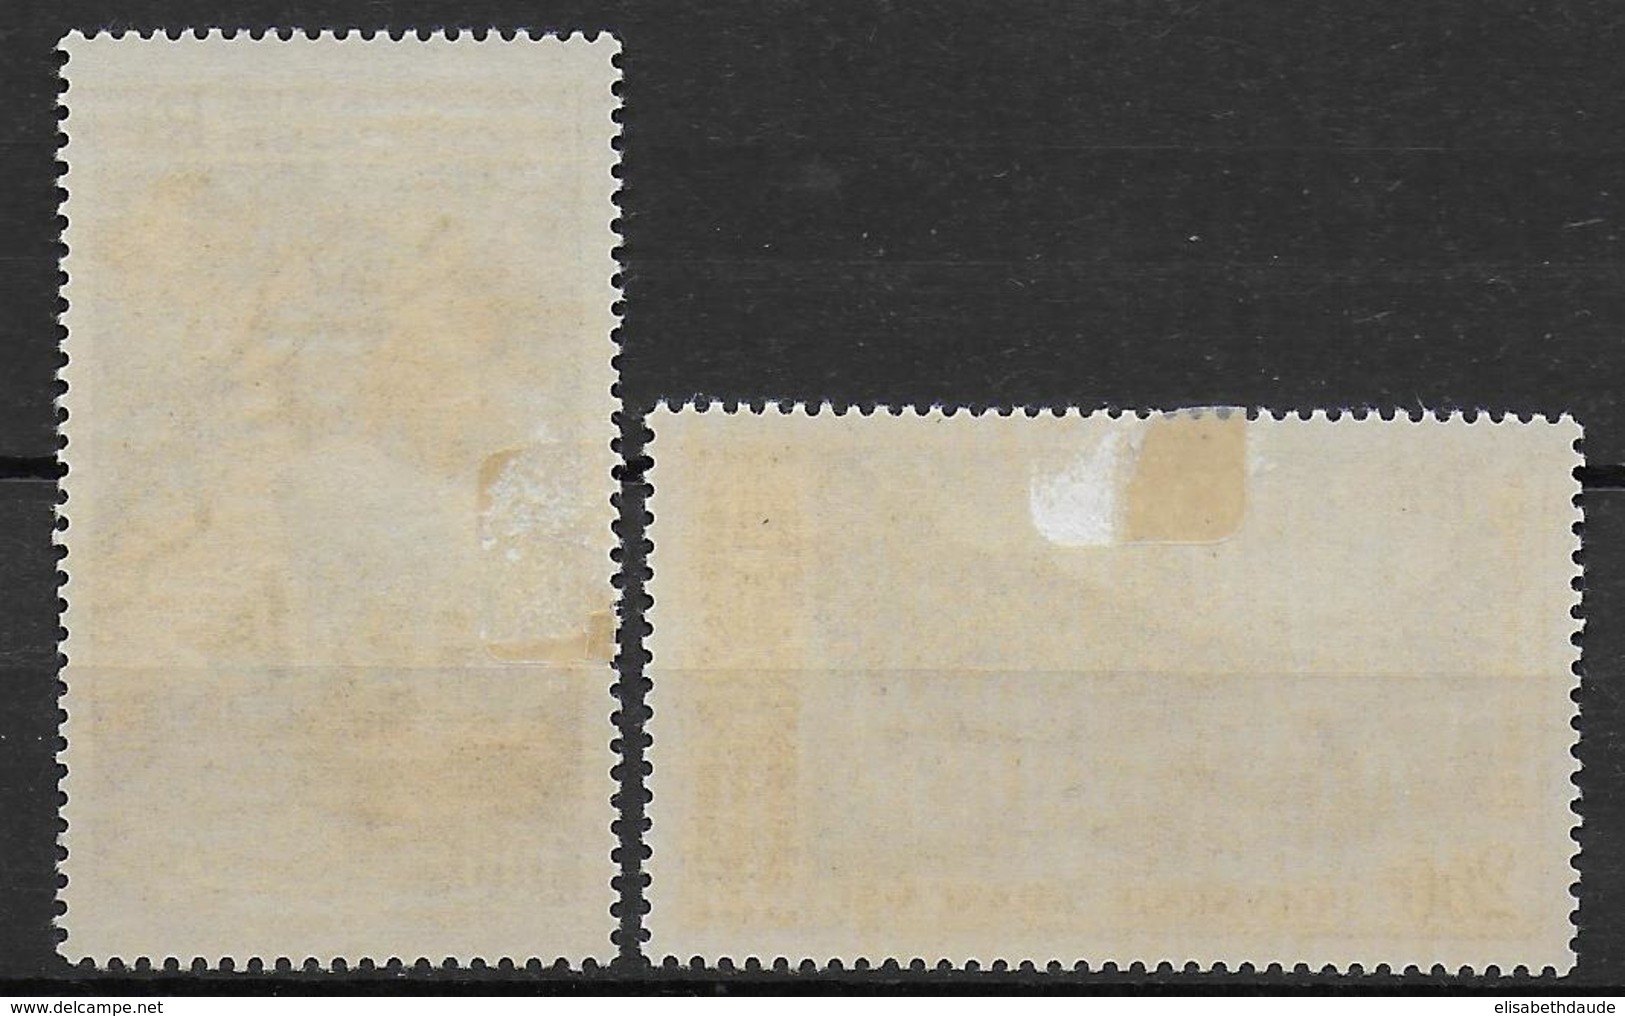 POLYNESIE - 1958 - YVERT N° 3/4 * / MH - CHARNIERE ASSEZ FORTE SUR LE N°4  - COTE = 62 EUR. - Unused Stamps